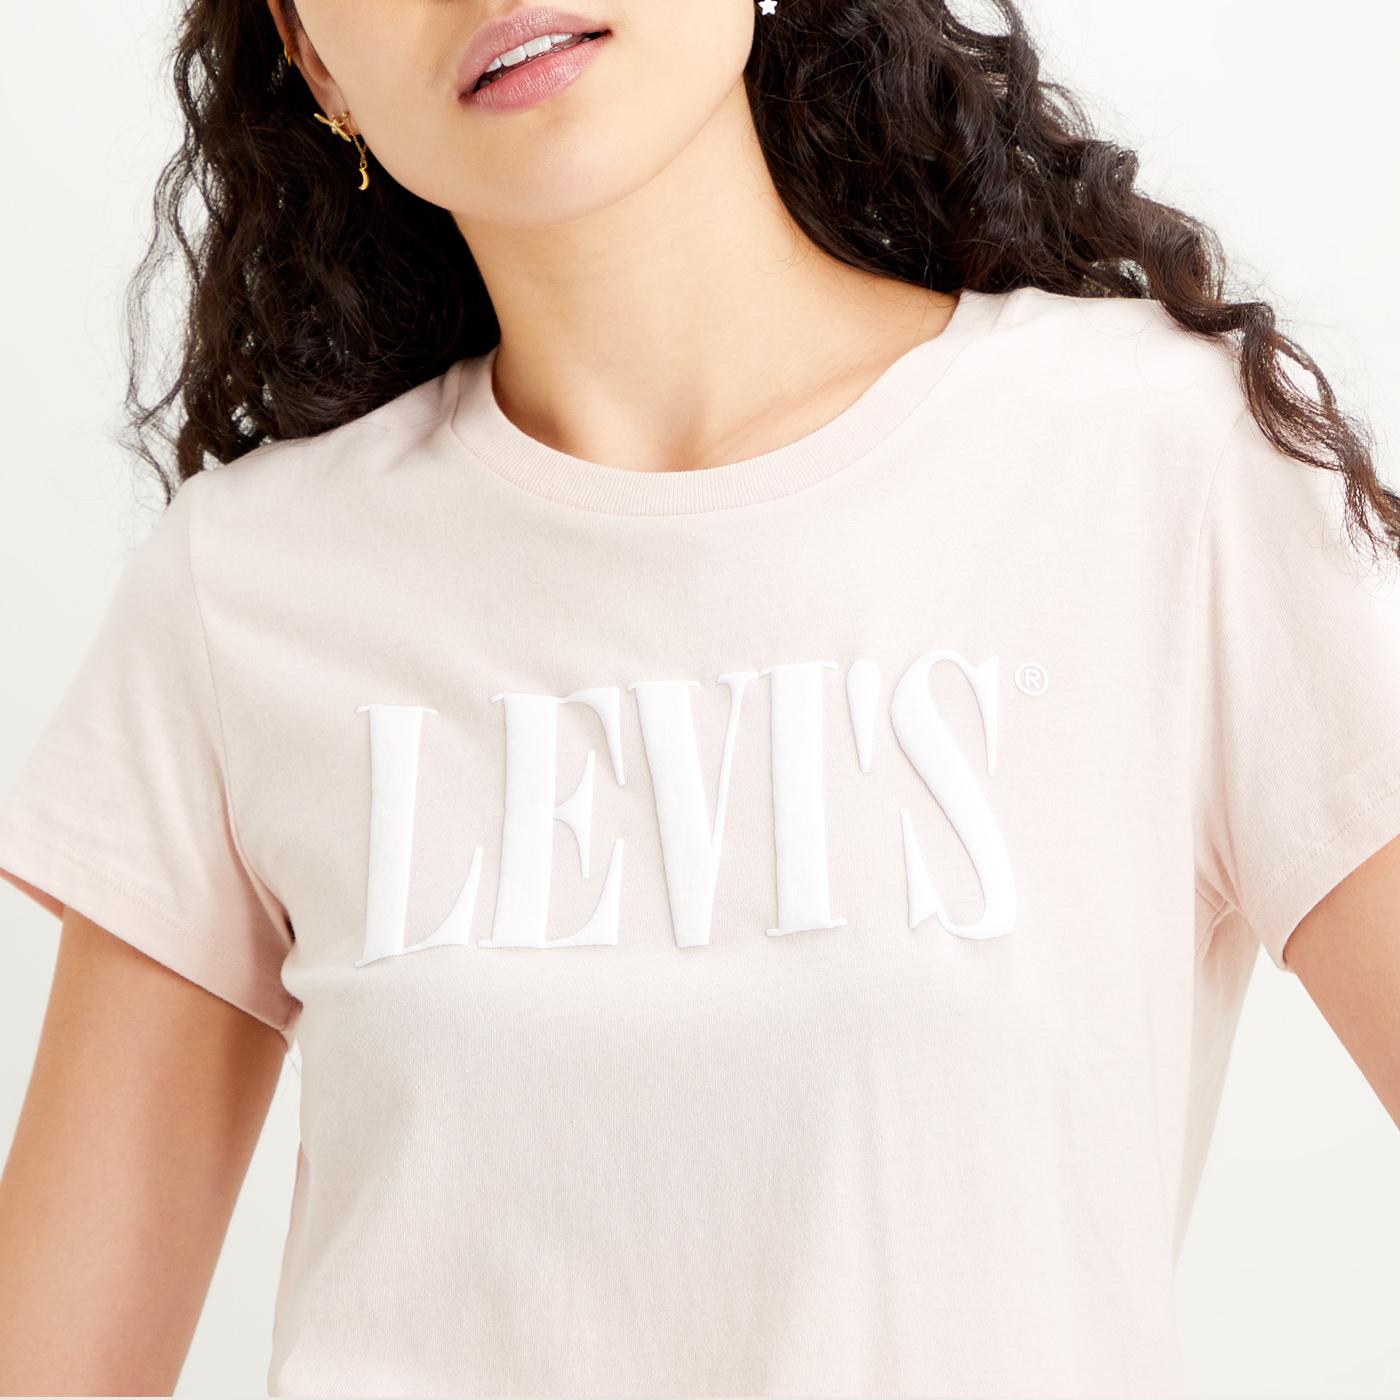 levis t shirt rose